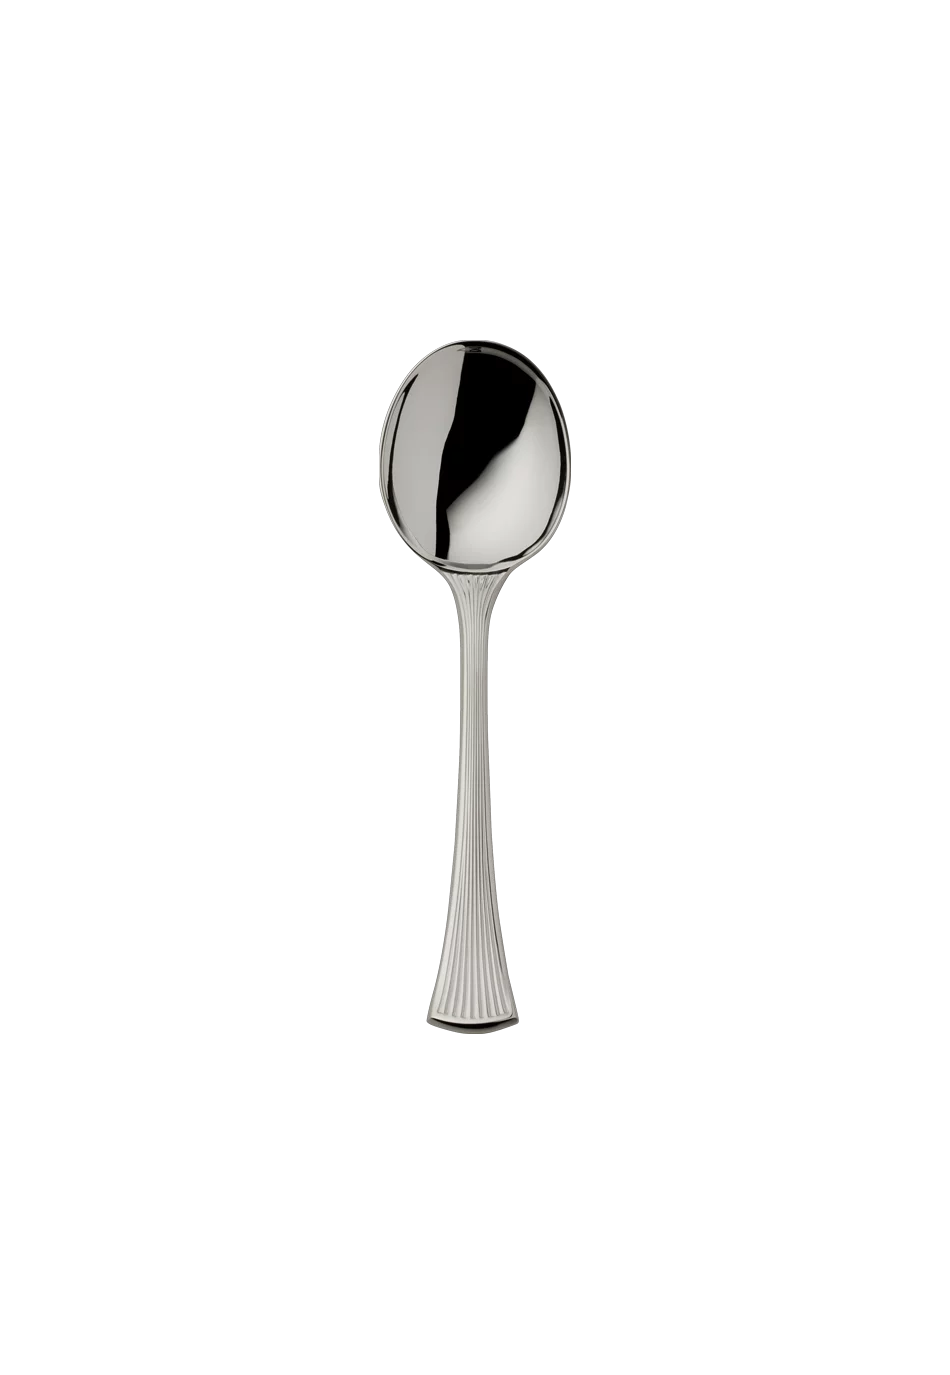 Avenue Cream Spoon (Broth Spoon) (150g massive silverplated)